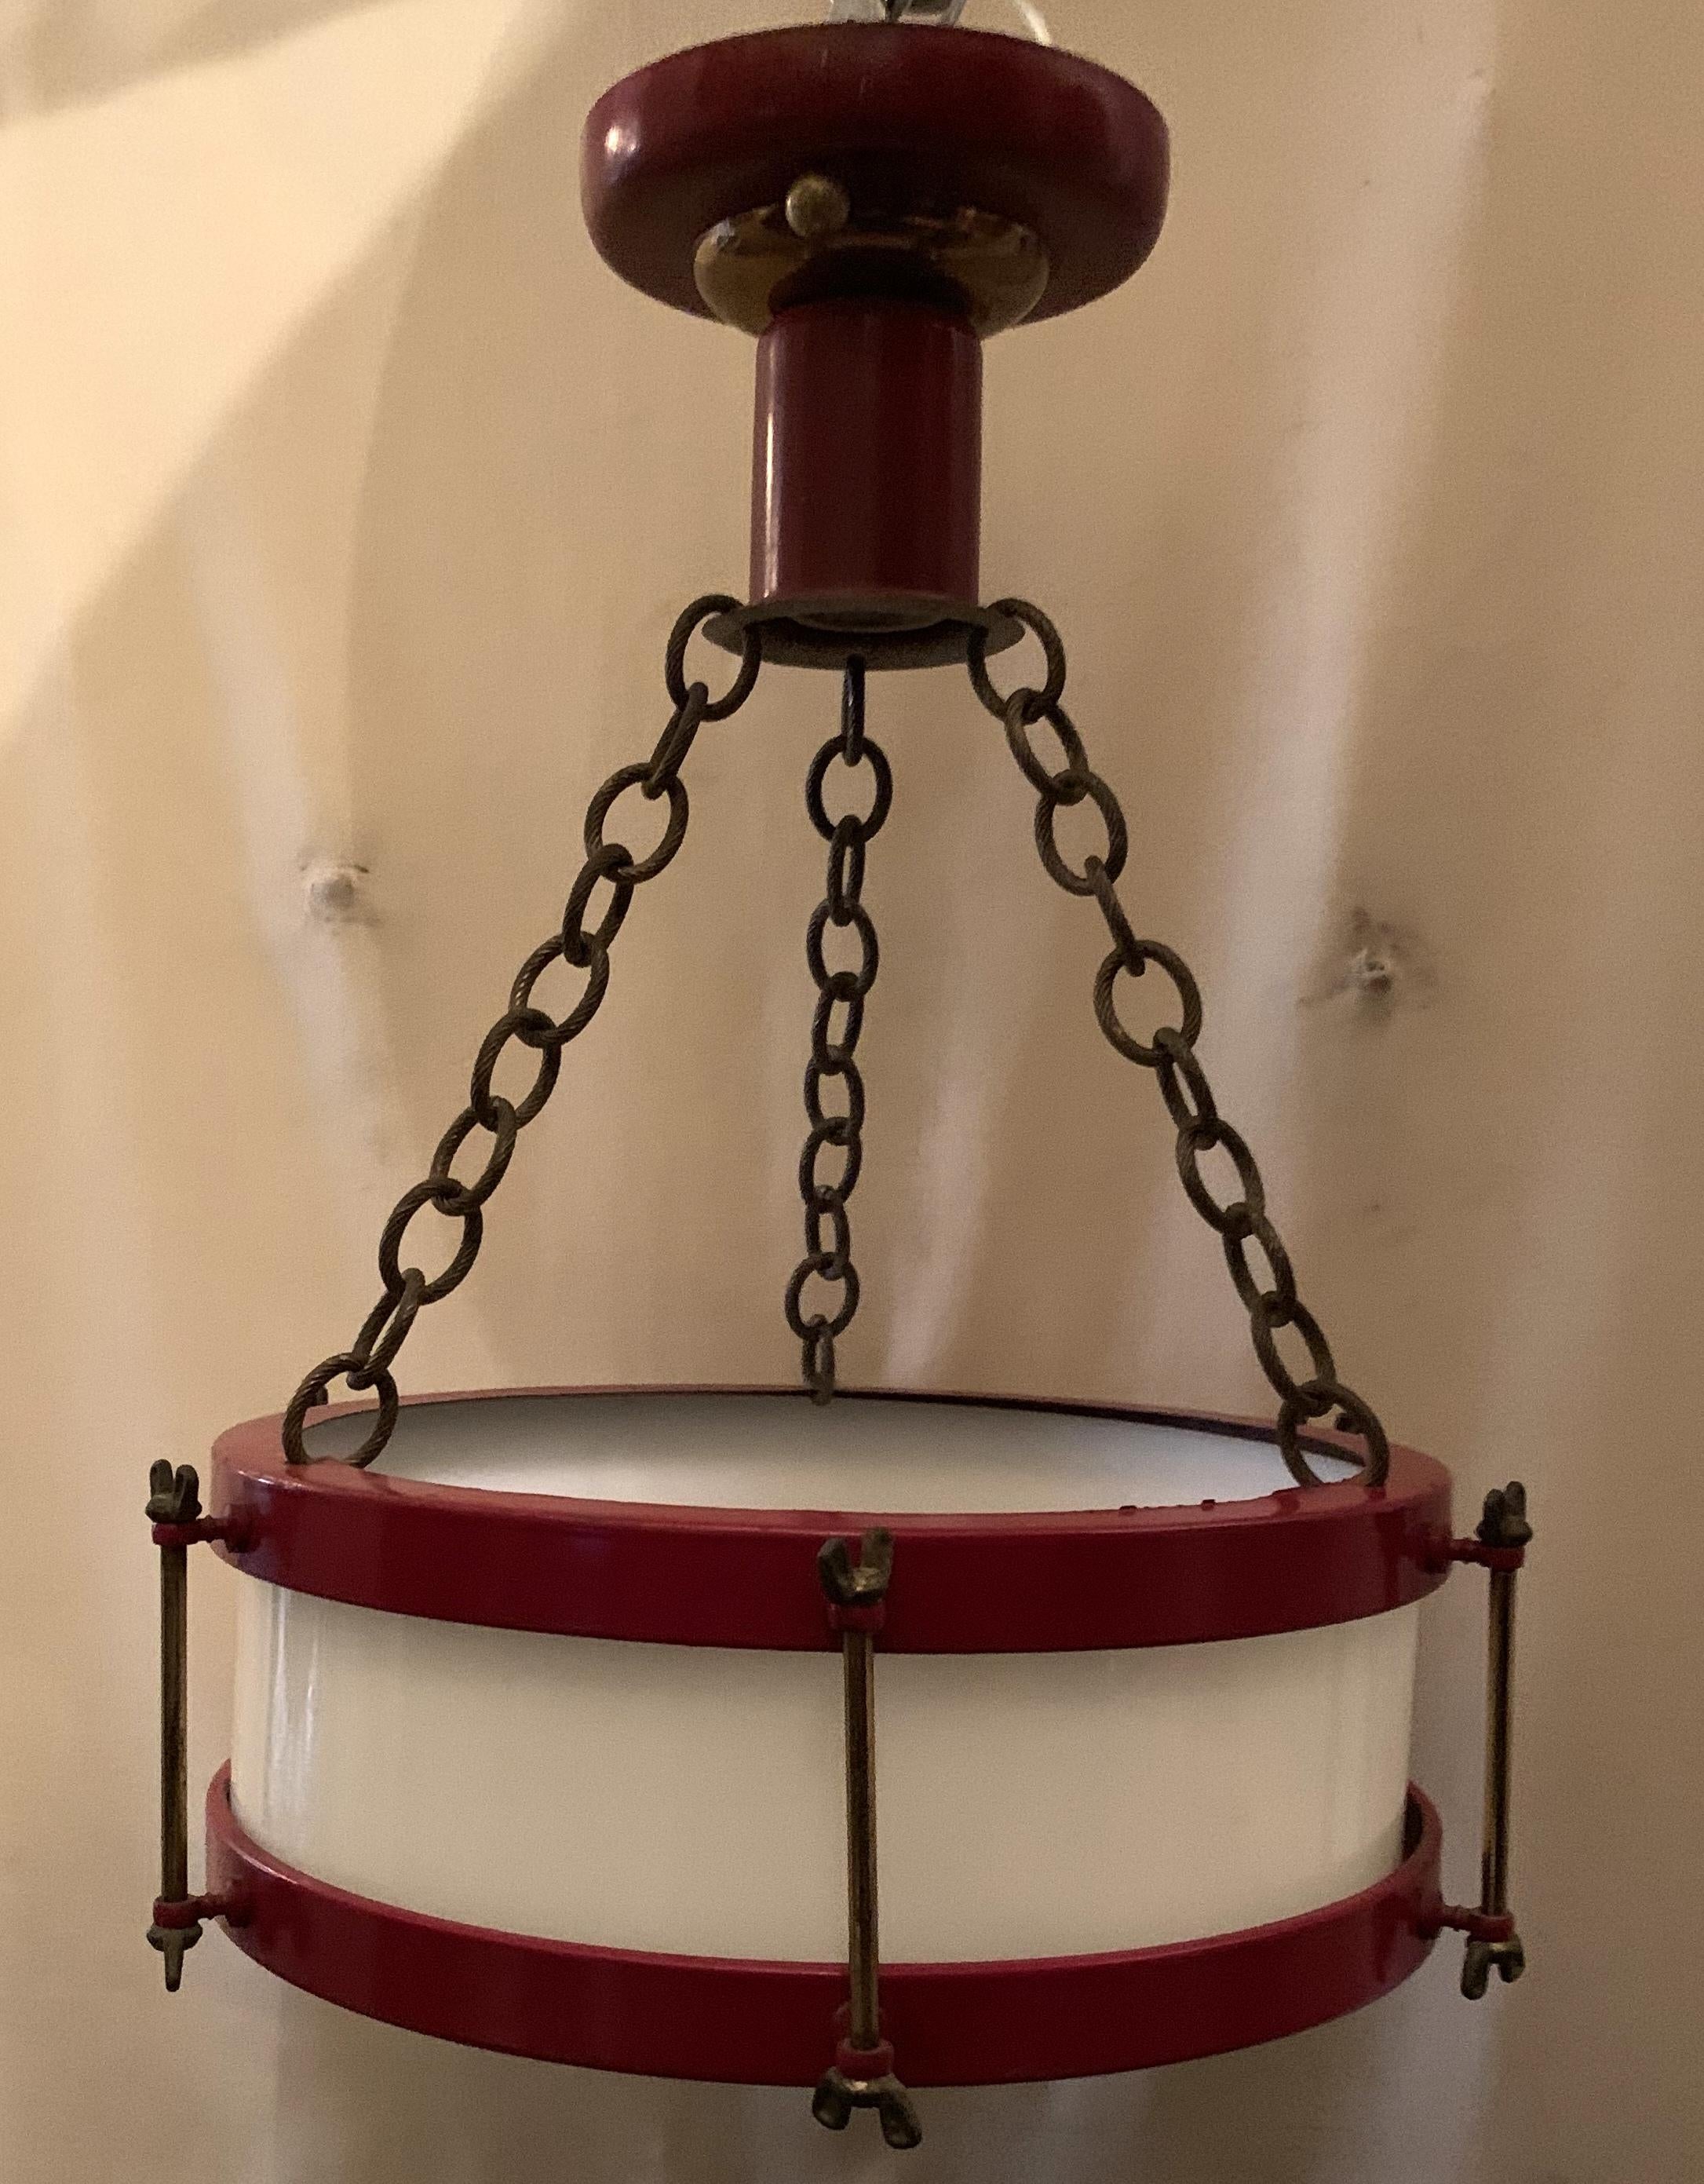 snare drum light fixture